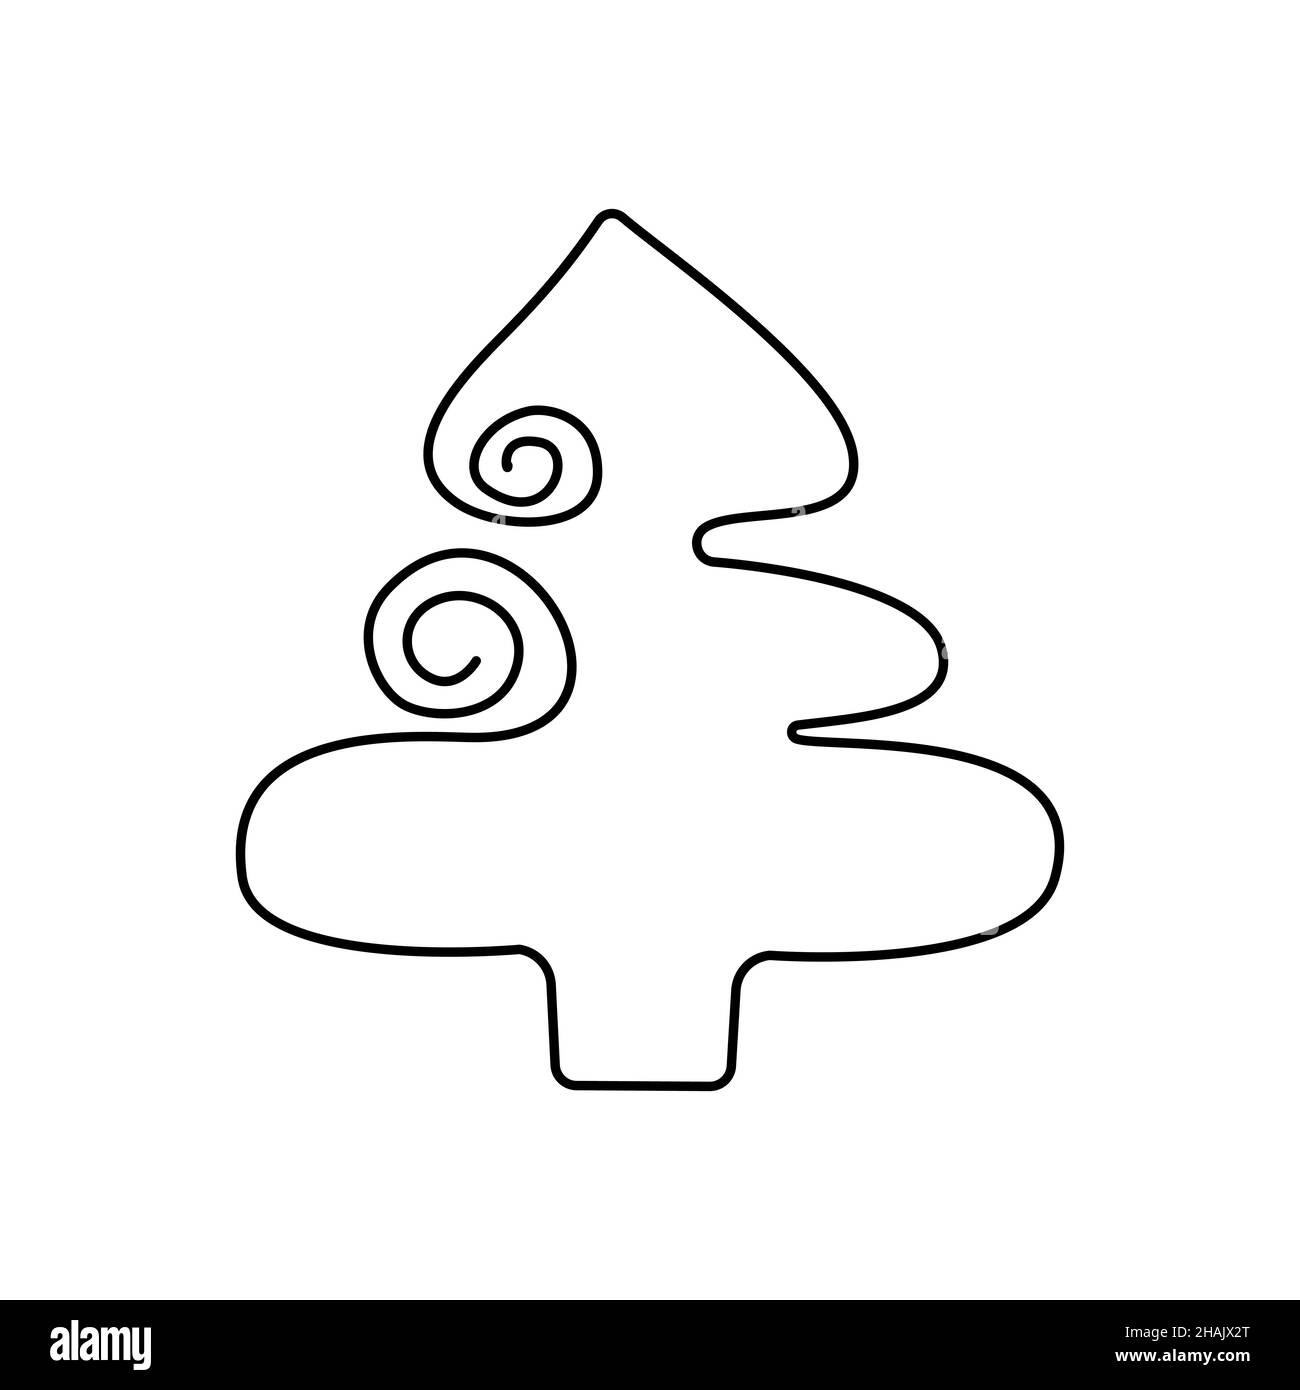 Skizzieren Sie die Zeichnung eines Weihnachtsbaums in einem minimalistischen Stil mit einer durchgehenden Linie. Von Hand gezeichnet. Vector Illustration ist geeignet für Design auf Stoff und Serviette Menü von Café und Restaurant Banner und Visitenkarte und Grußkarte. Vektorgrafiken. Stock Vektor